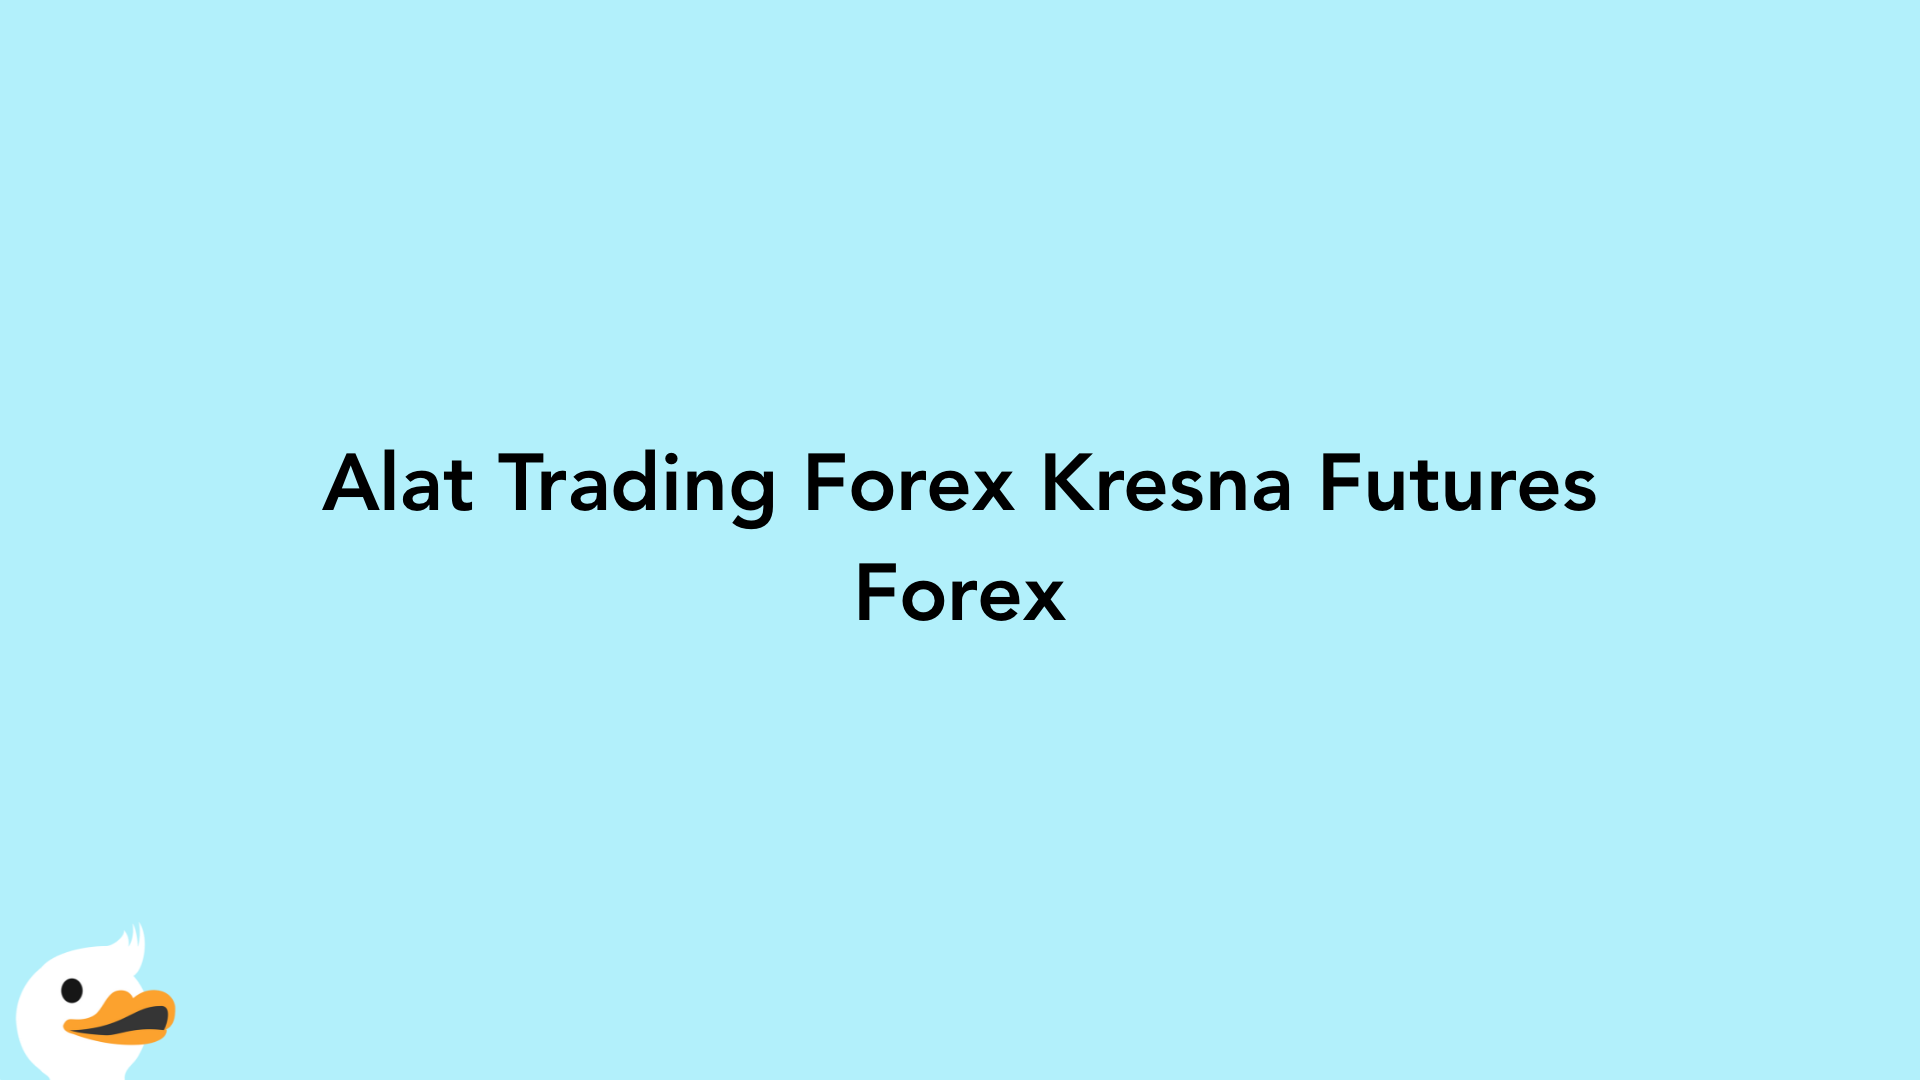 Alat Trading Forex Kresna Futures Forex